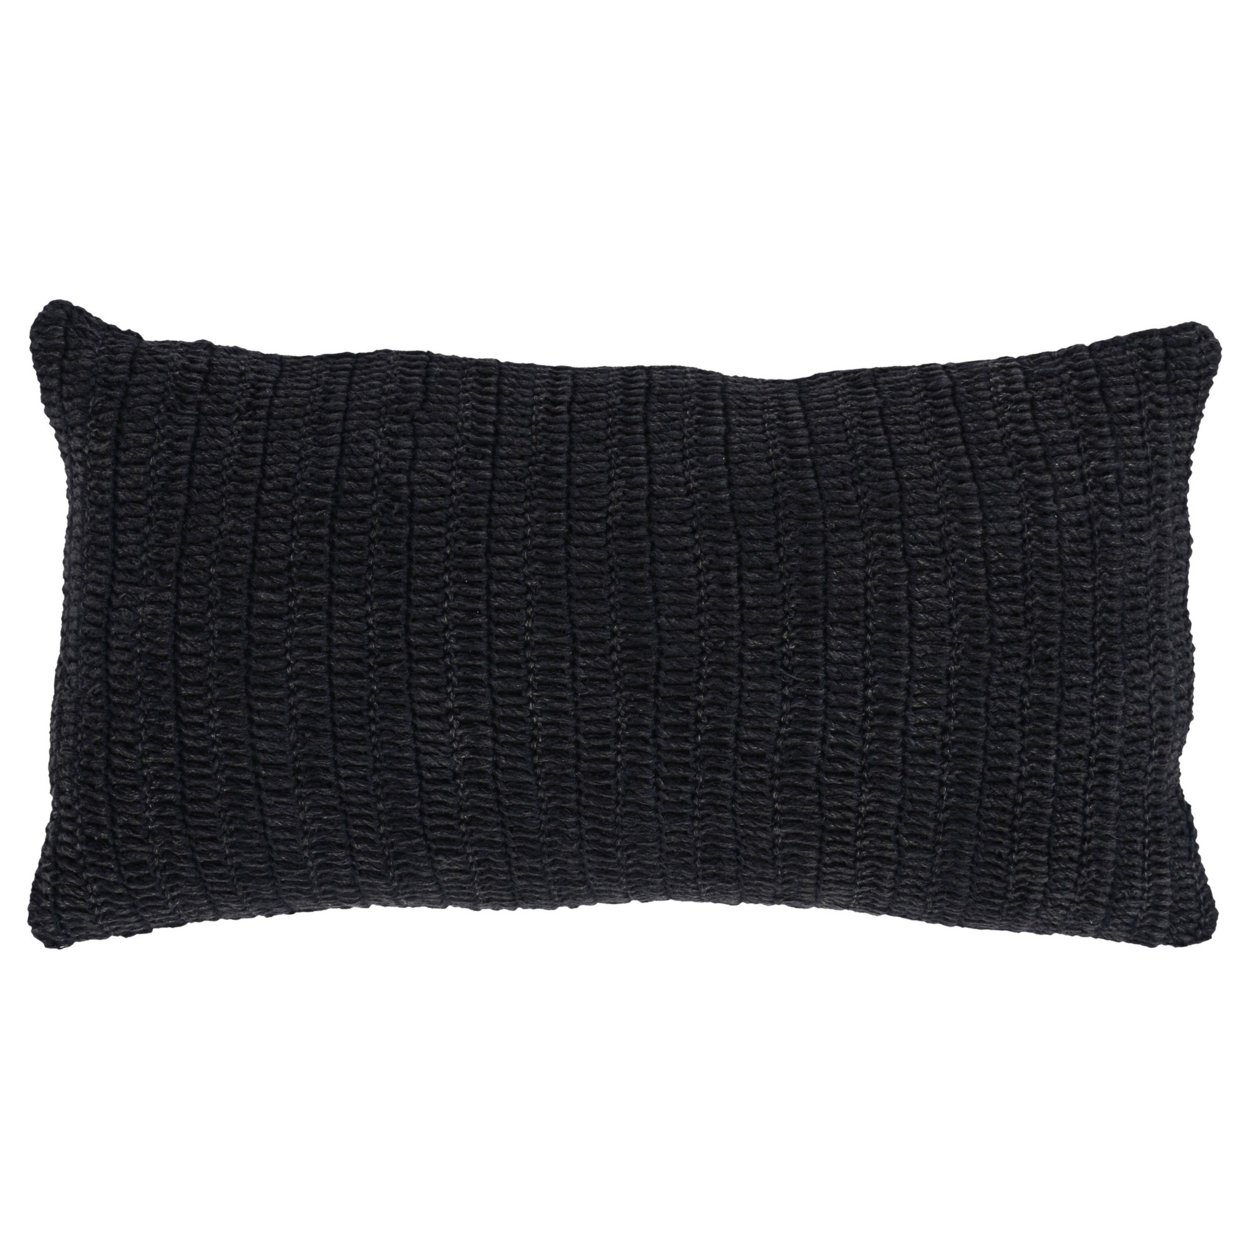 Rosie 14 X 26 Lumbar Accent Throw Pillow, Hand Knitted Designs, Black Linen- Saltoro Sherpi